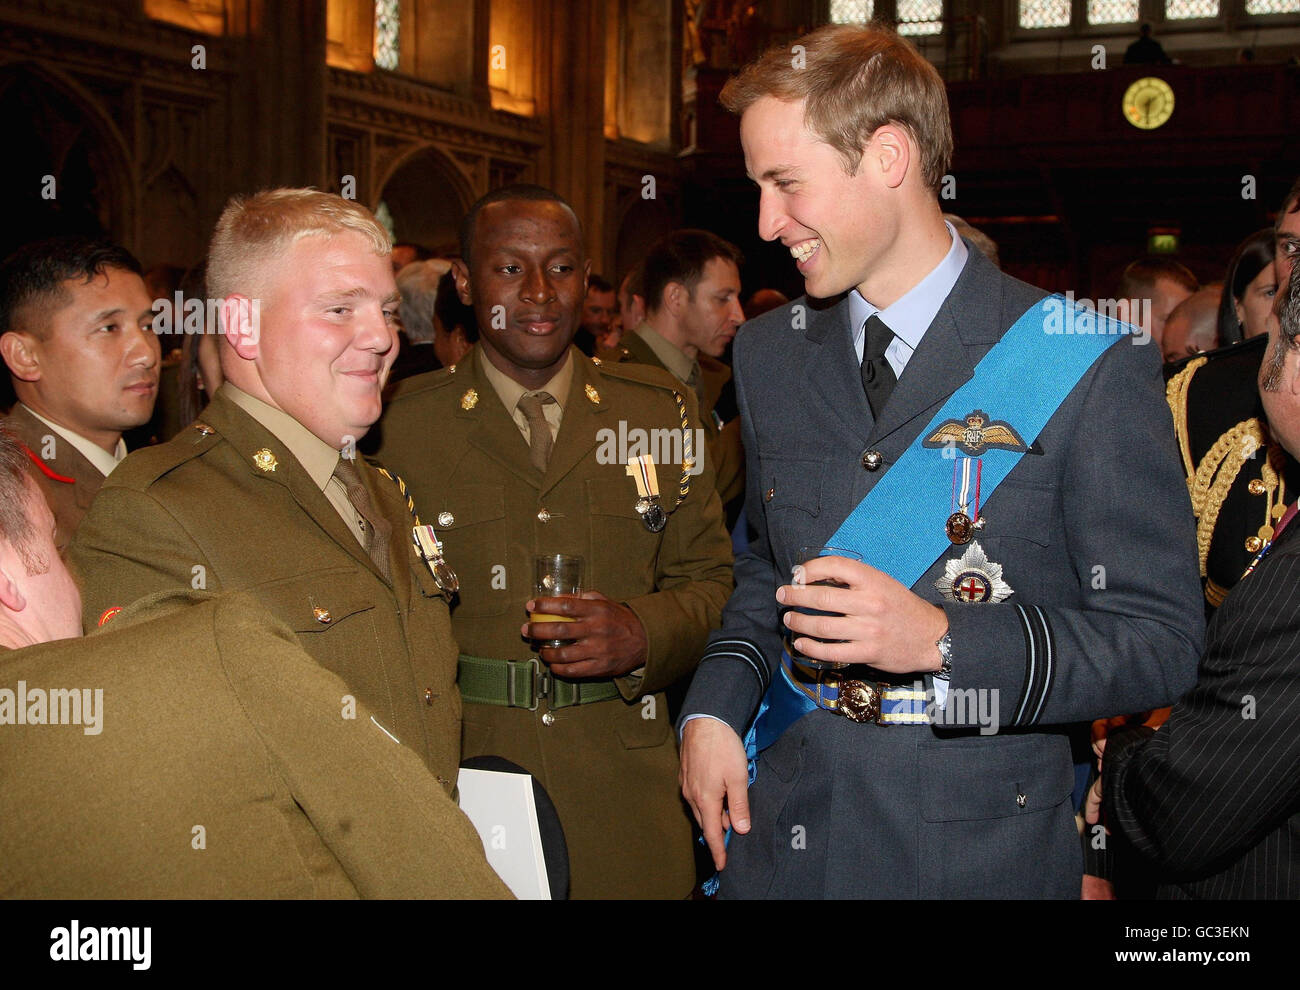 Prinz William spricht mit Soldaten während eines Empfangs in der Guildhall in London nach dem Gedenkgottesdienst in der St. Paul's Cathedral zu Ehren des britischen Militärs und zivilen Personals, das im Irak diente. Stockfoto